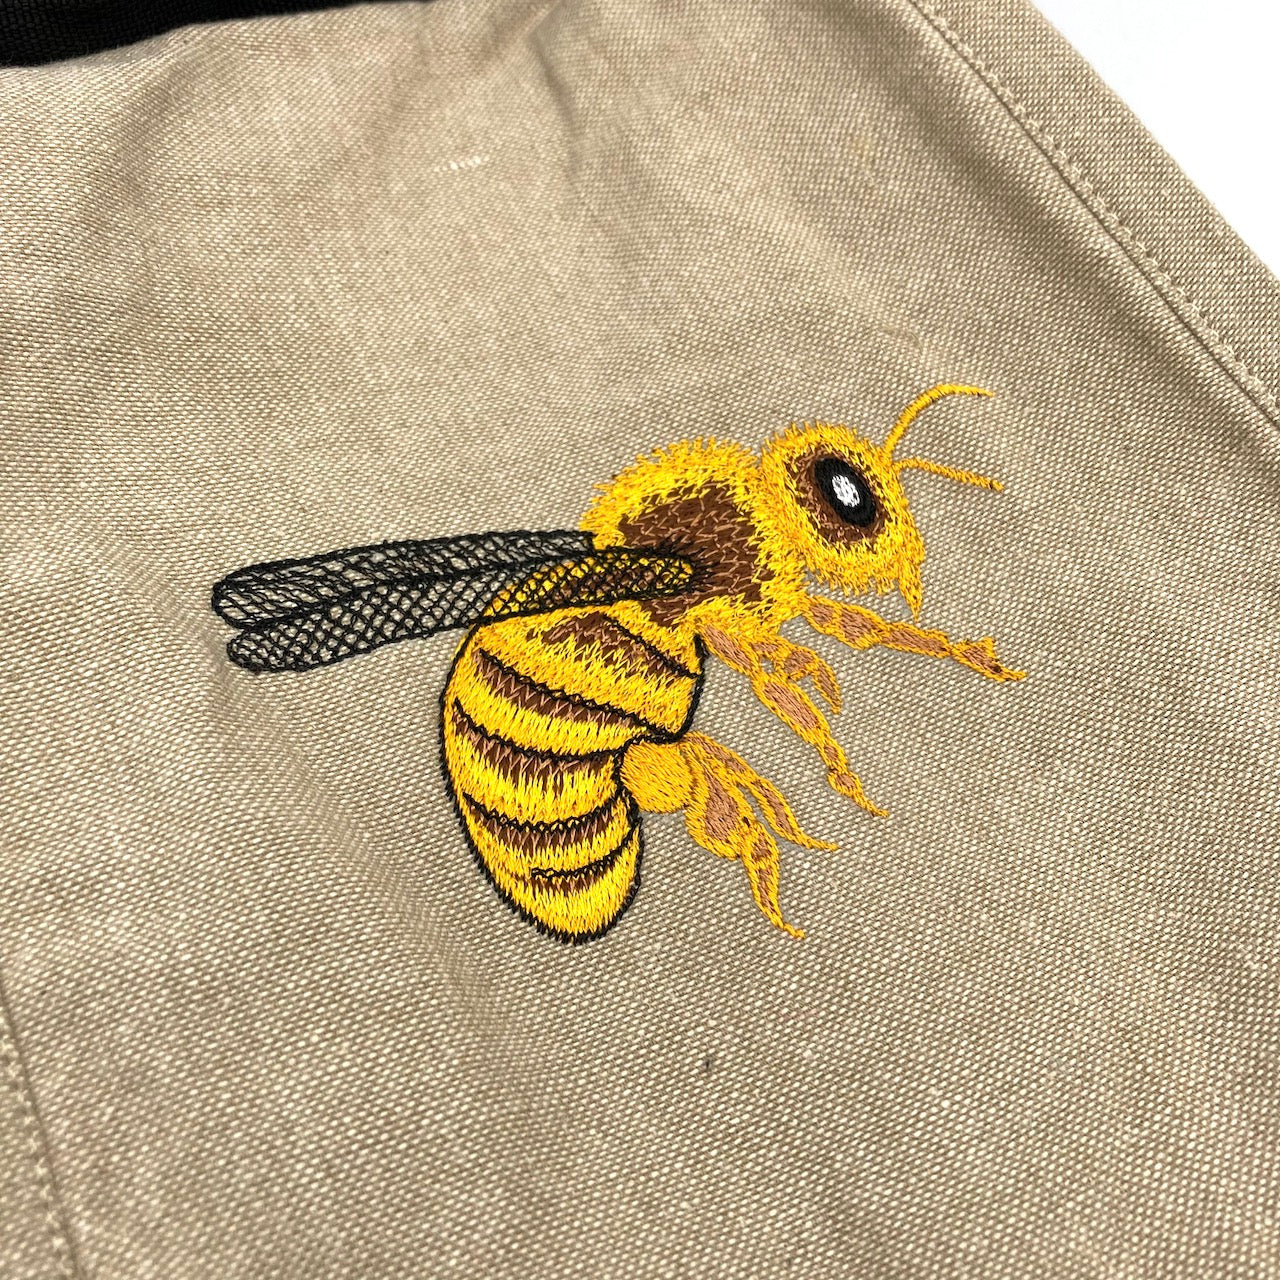 Honeybee Field Bag